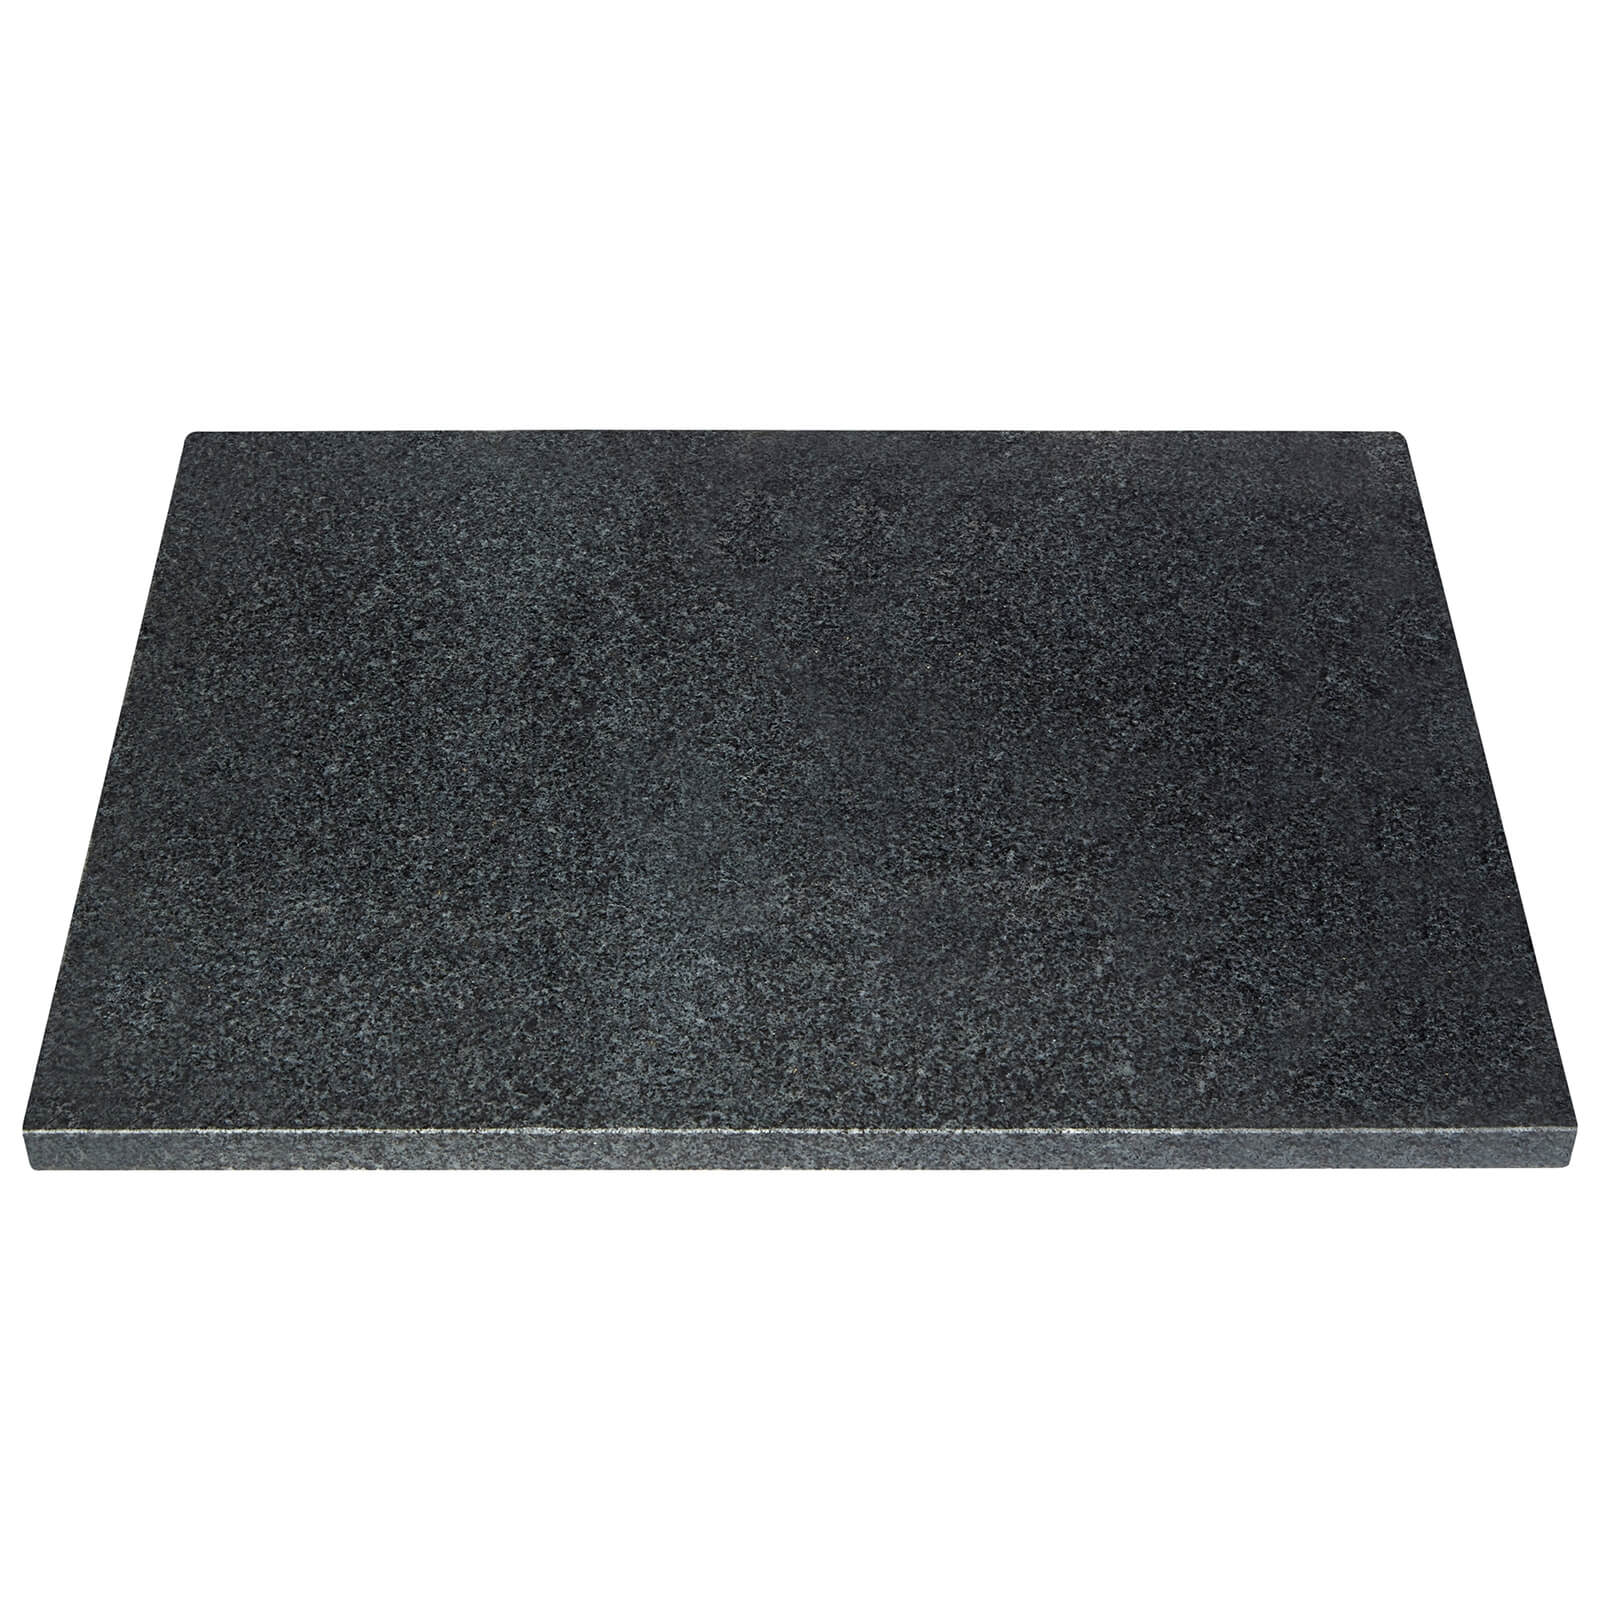 Black Granite Worktop Saver